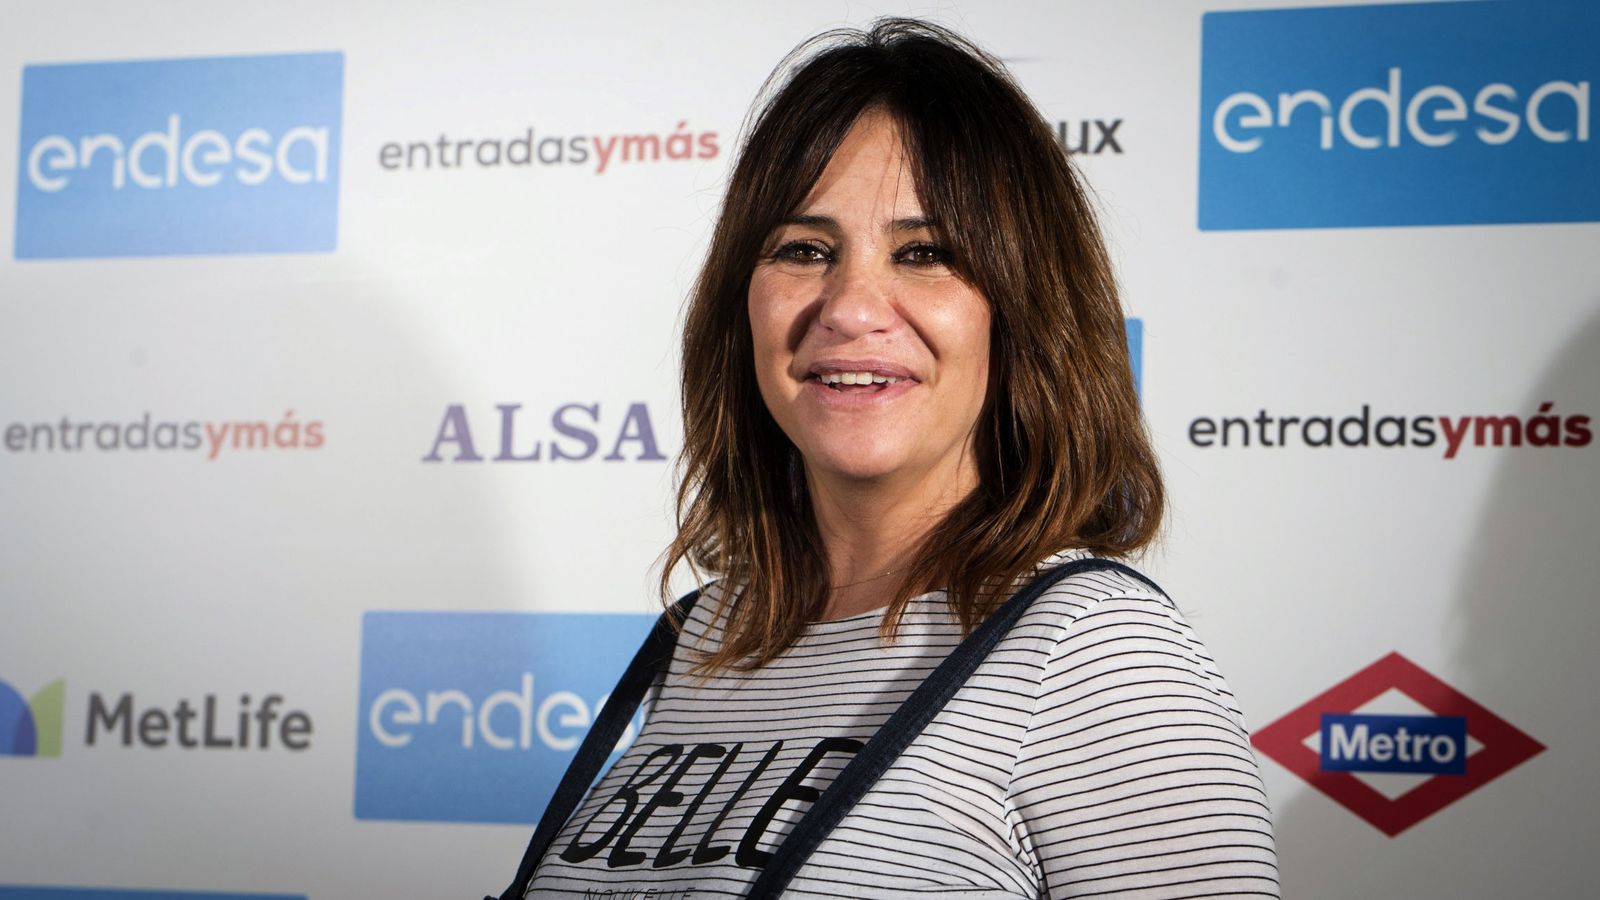 Foto: Melani Olivares posa a su llegada a la presentación de 'Entradas Ymás'. (EFE).